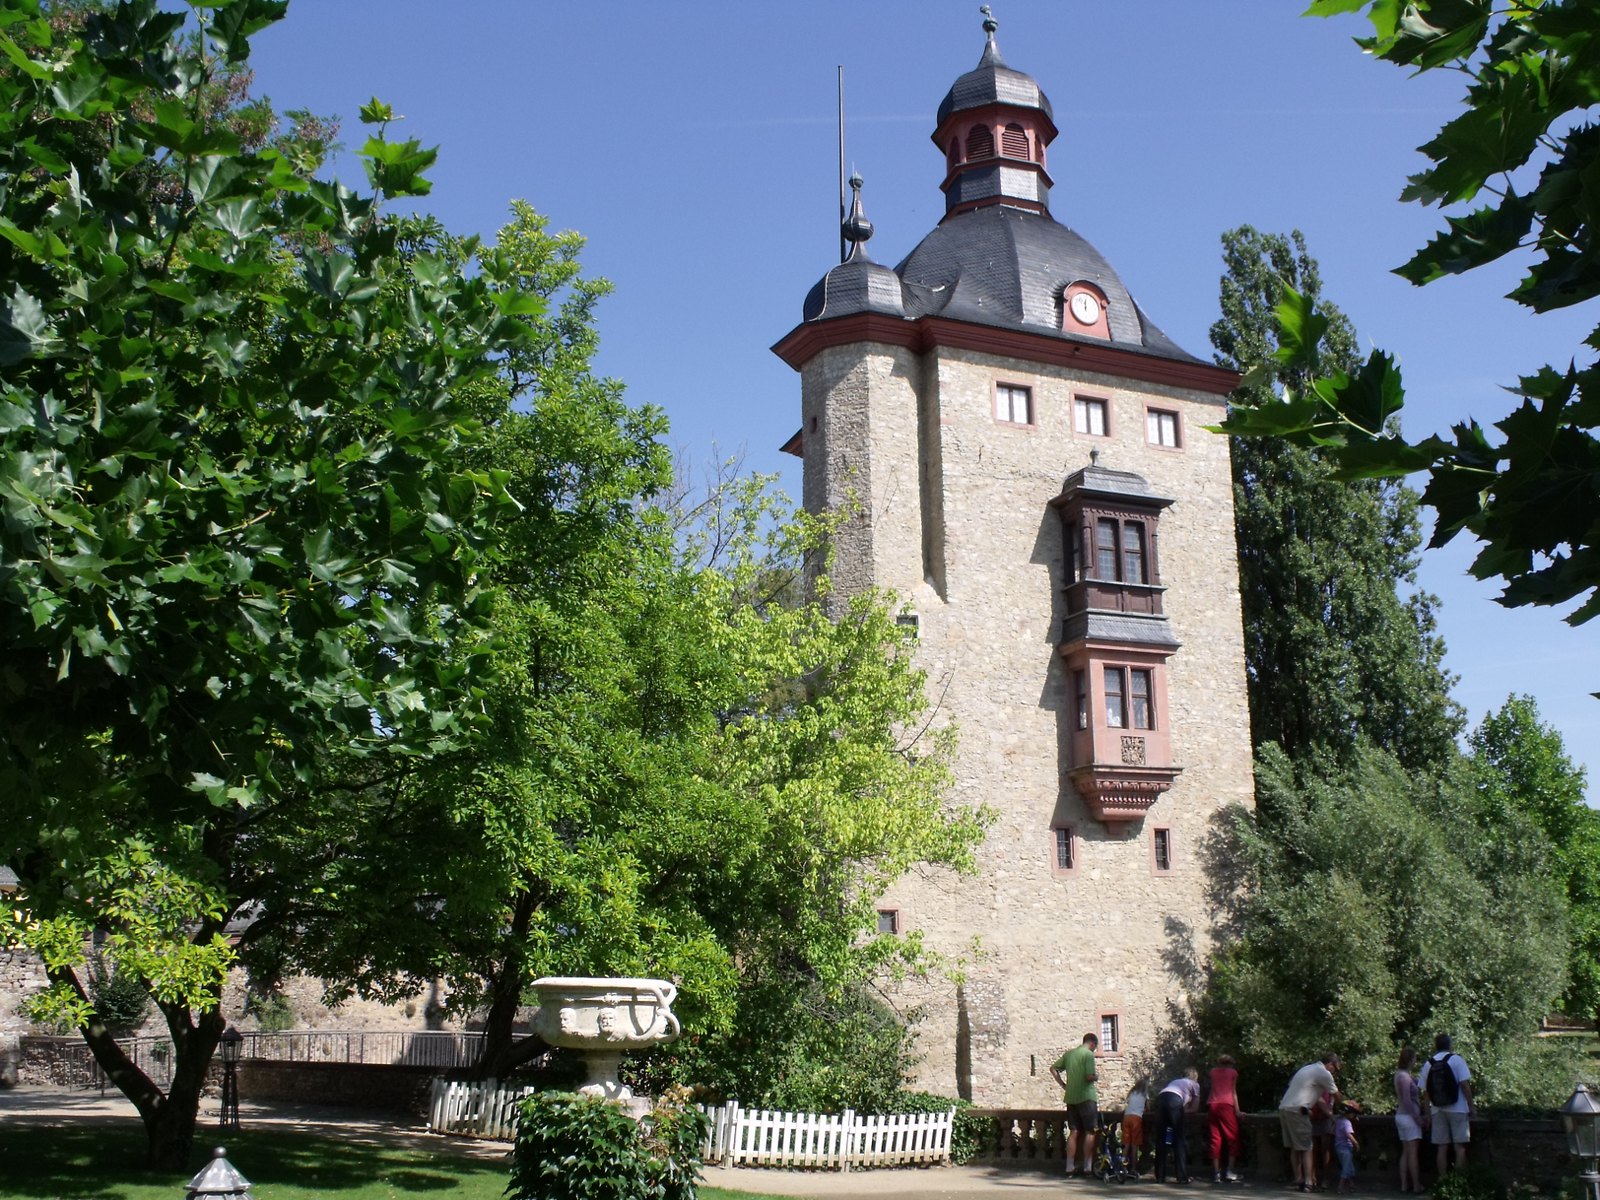 Schloss Vollrads is one of the world's oldest wineries (photo: Oliver Bildesheim)